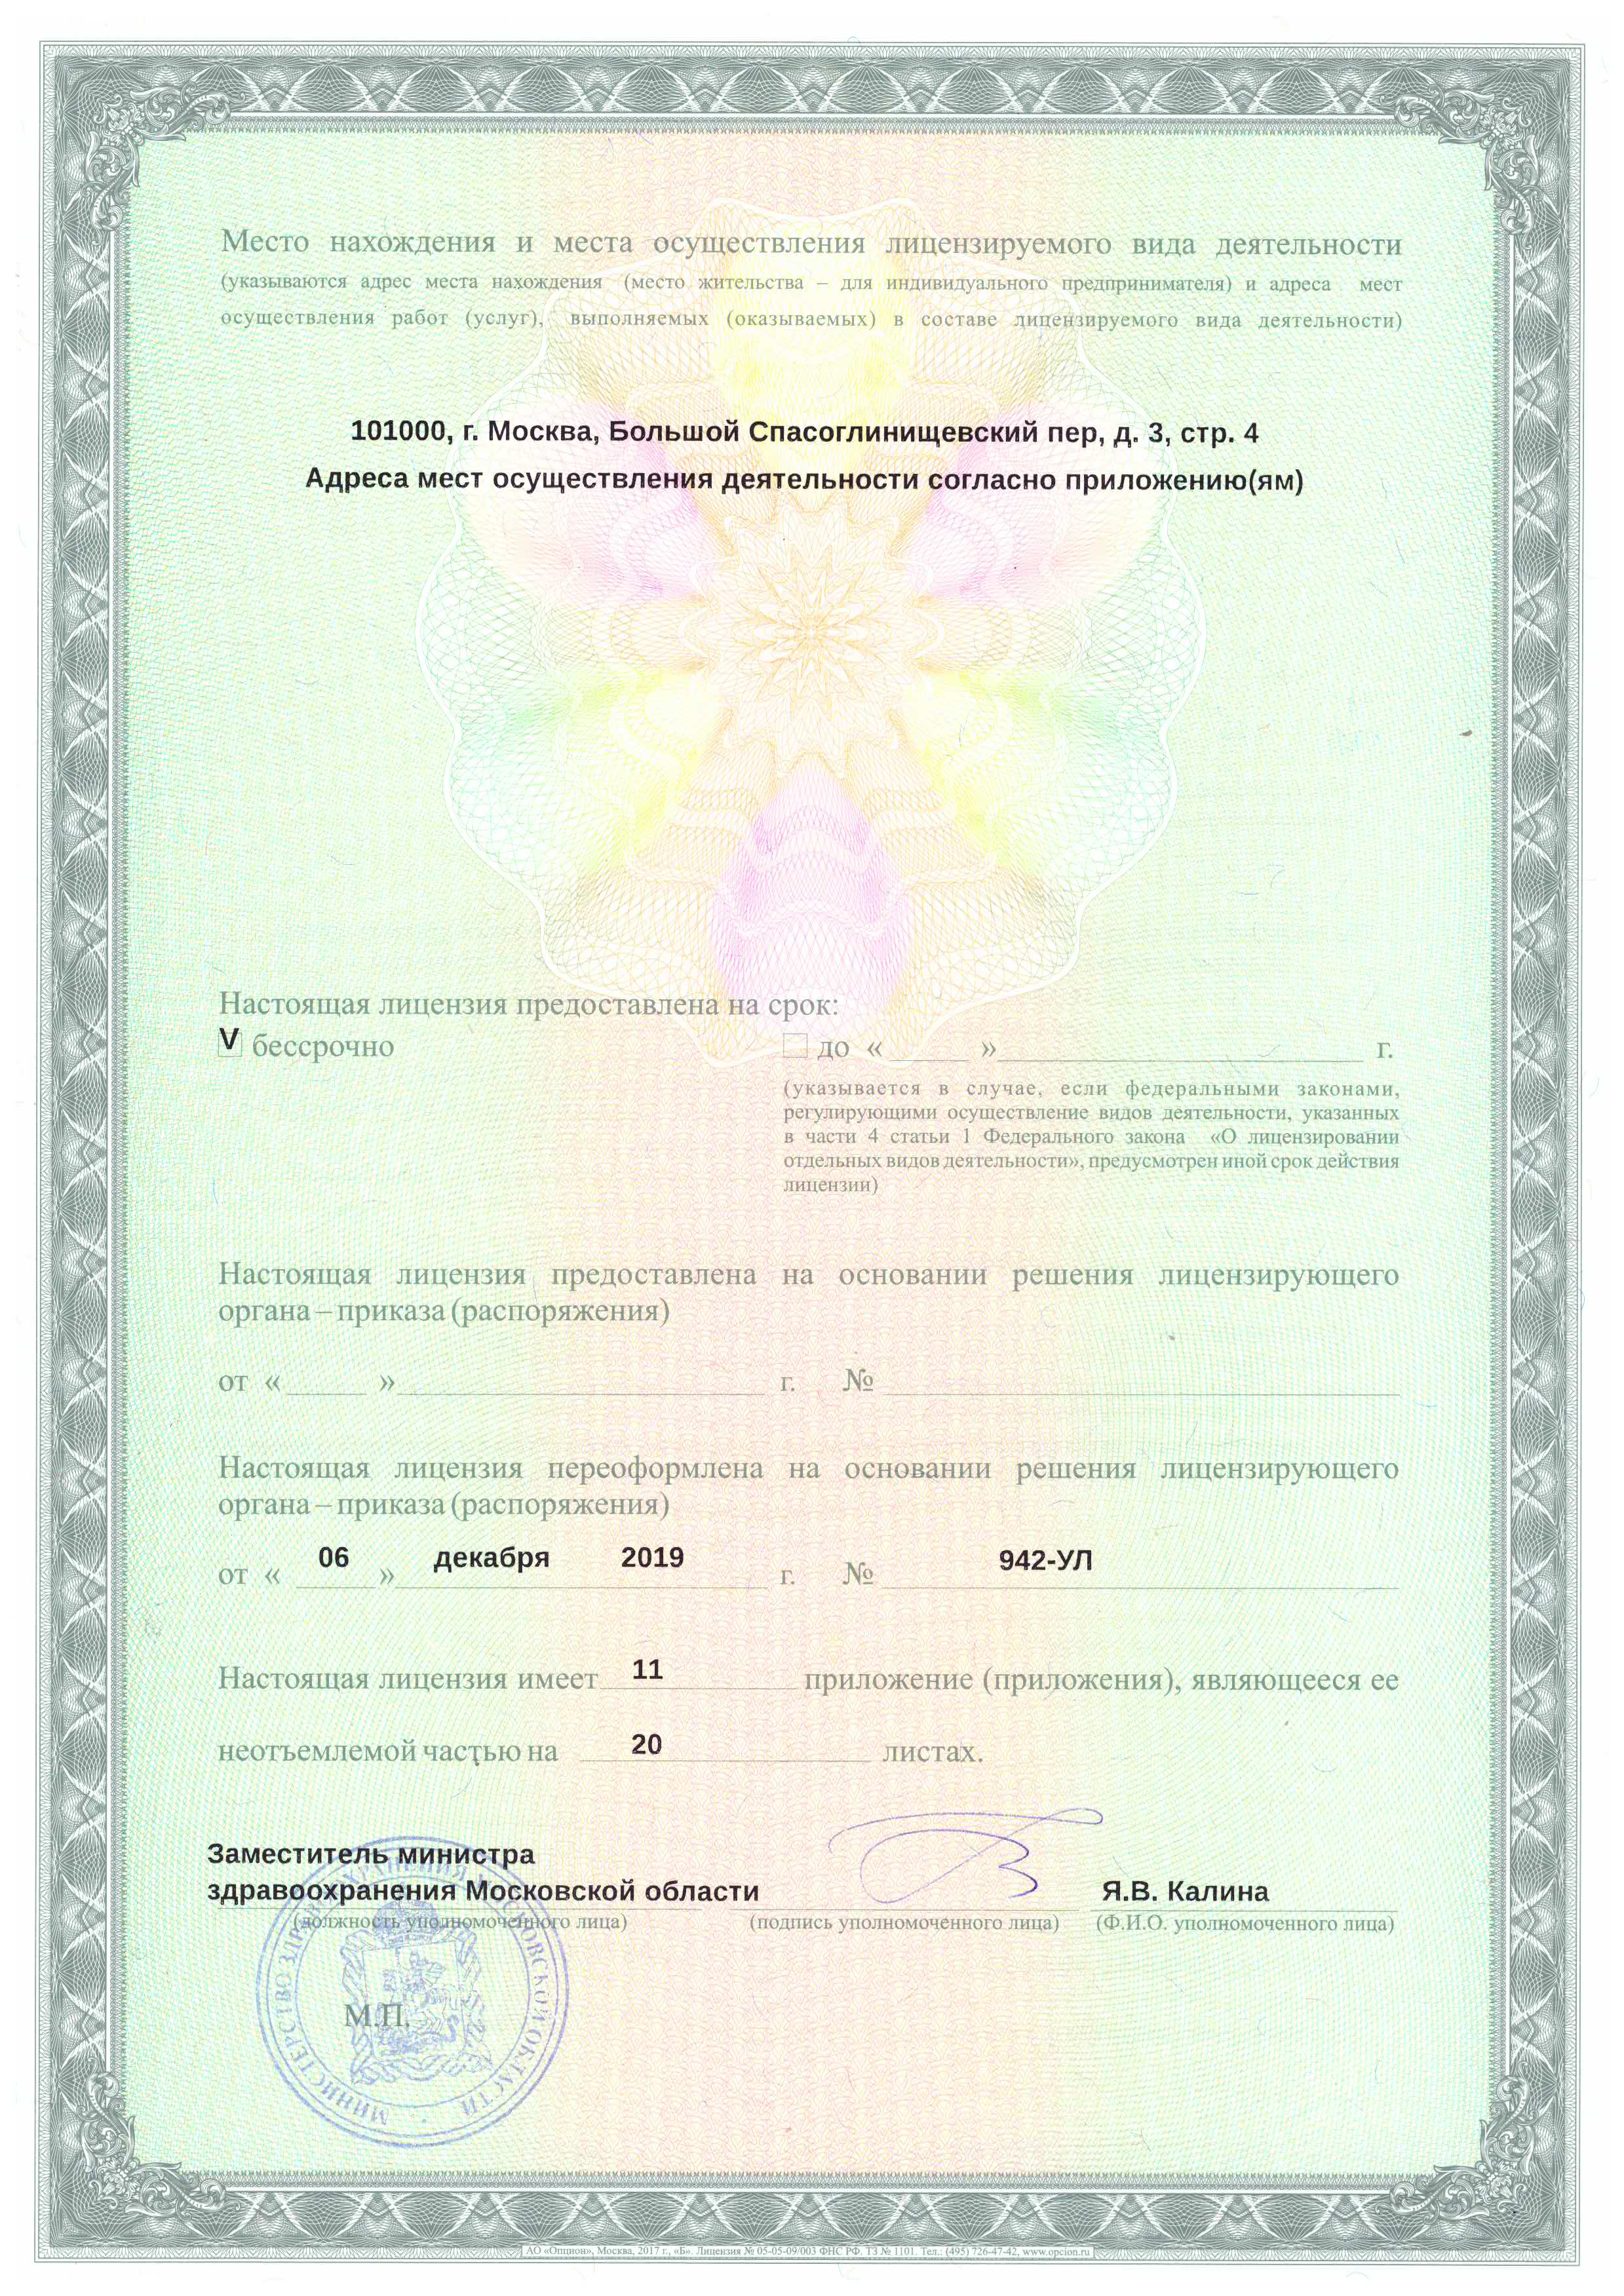 Лицензия на осуществления медицинских услуг Санаторий Звенигород (Введенское)